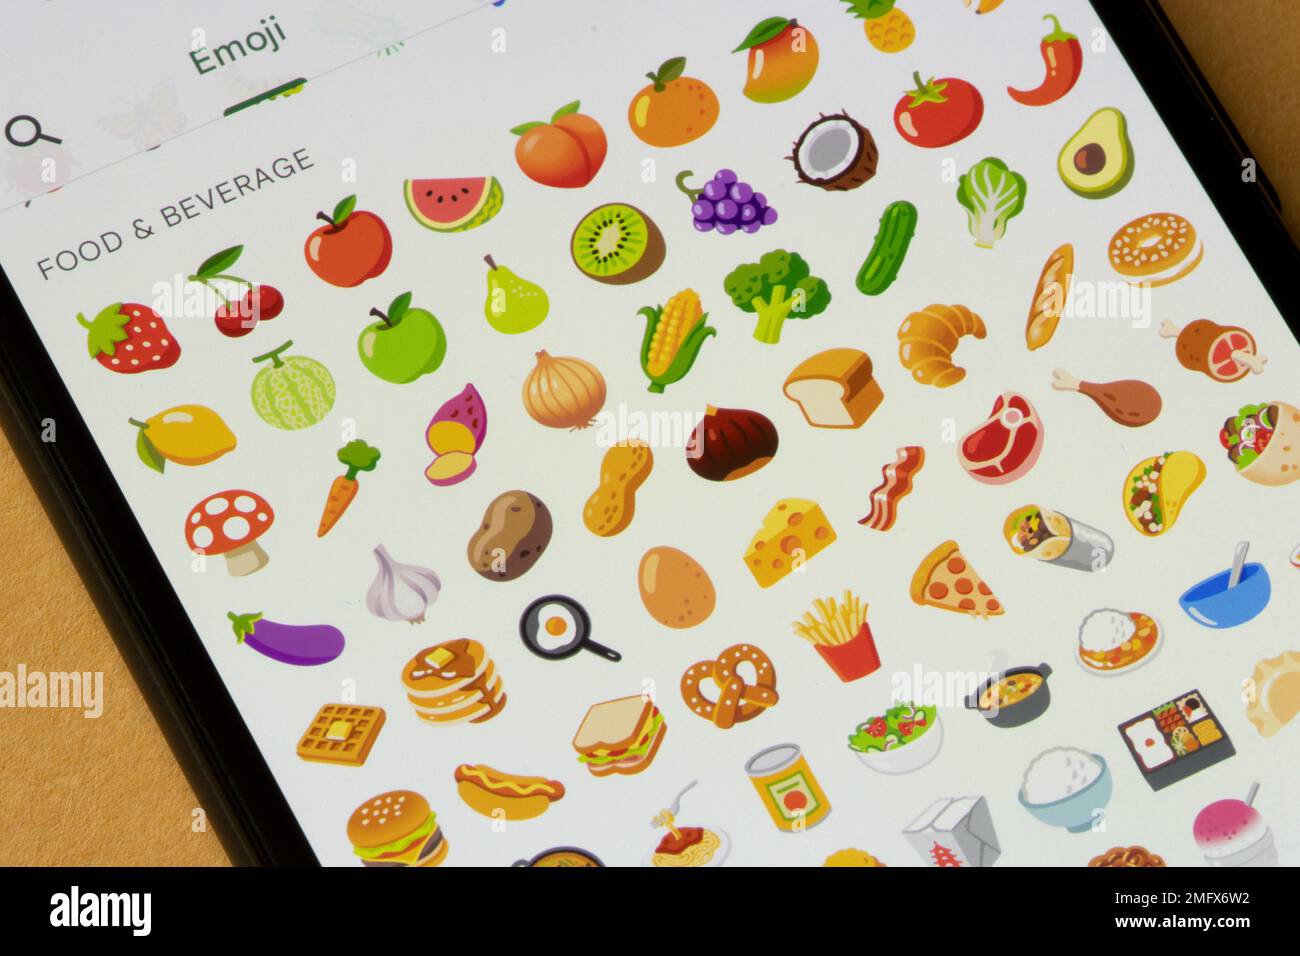 In der Messages-App auf einem Google Pixel-Smartphone werden verschiedene Food-Emojis angezeigt. Lebensmittelkonzepte. Stockfoto